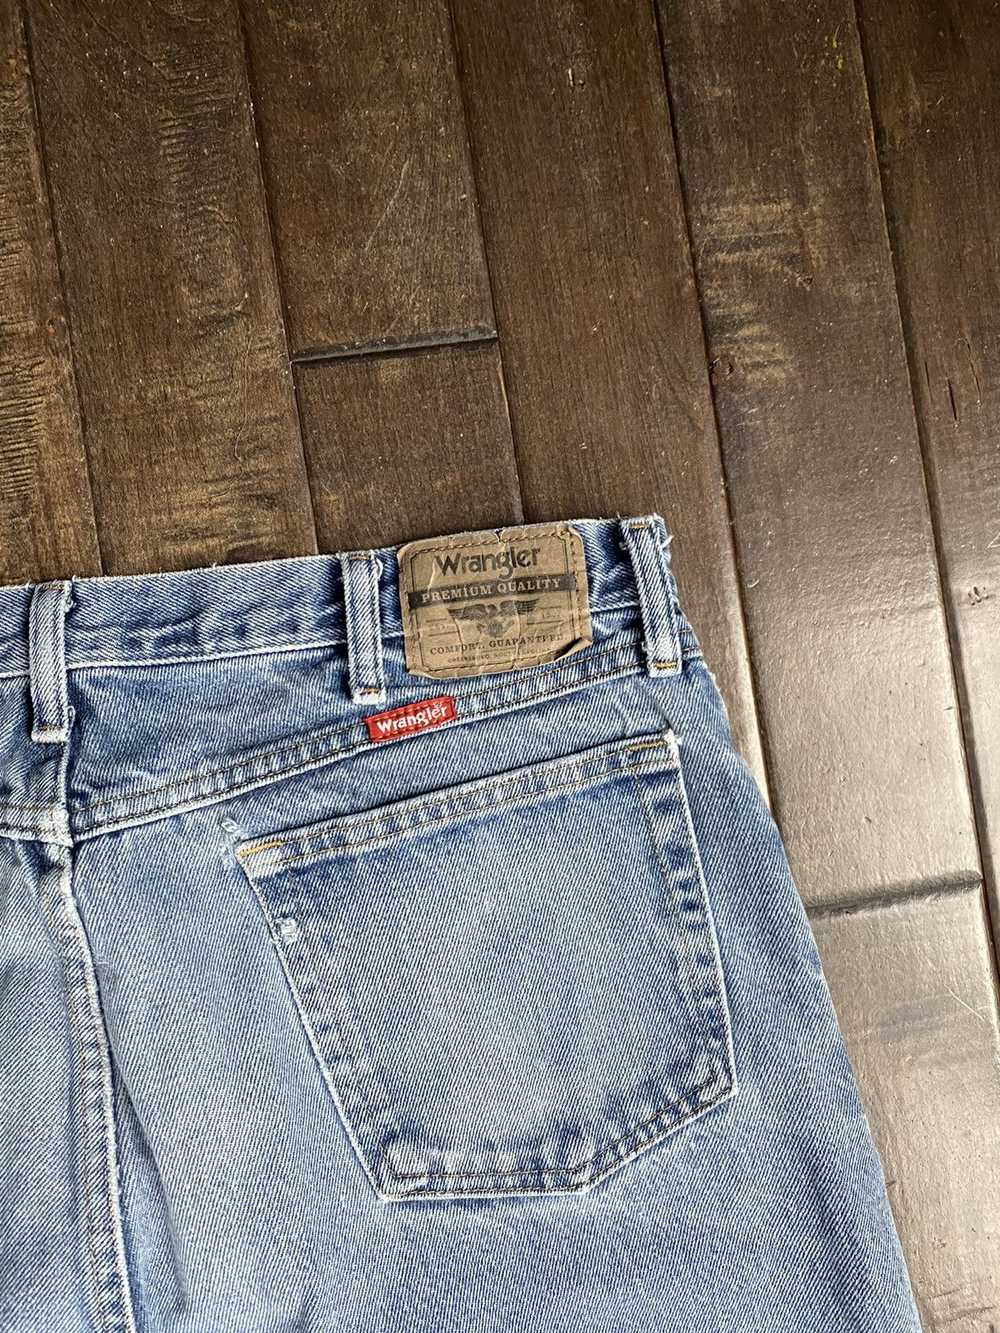 Wrangler vintage distressed wrangler jeans - image 7